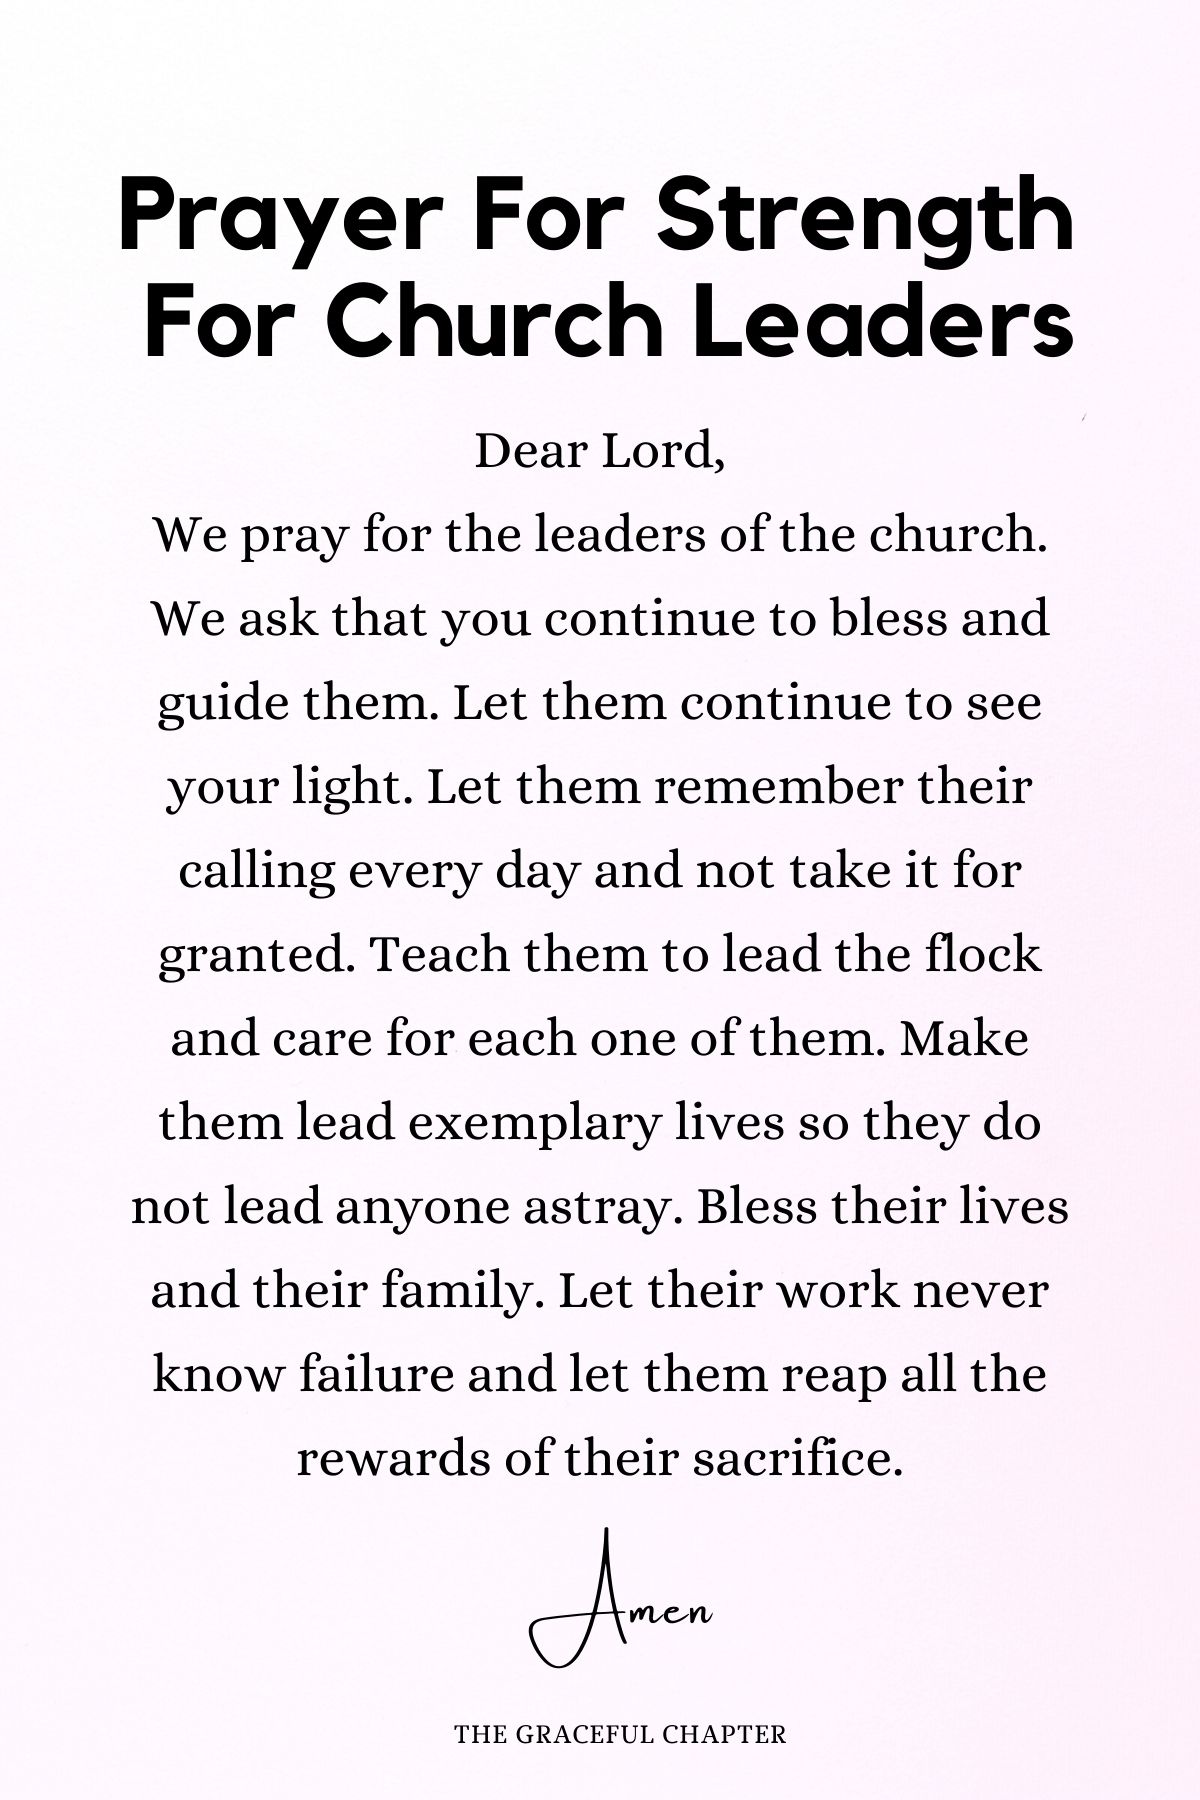 Prayer for strength for church leaders